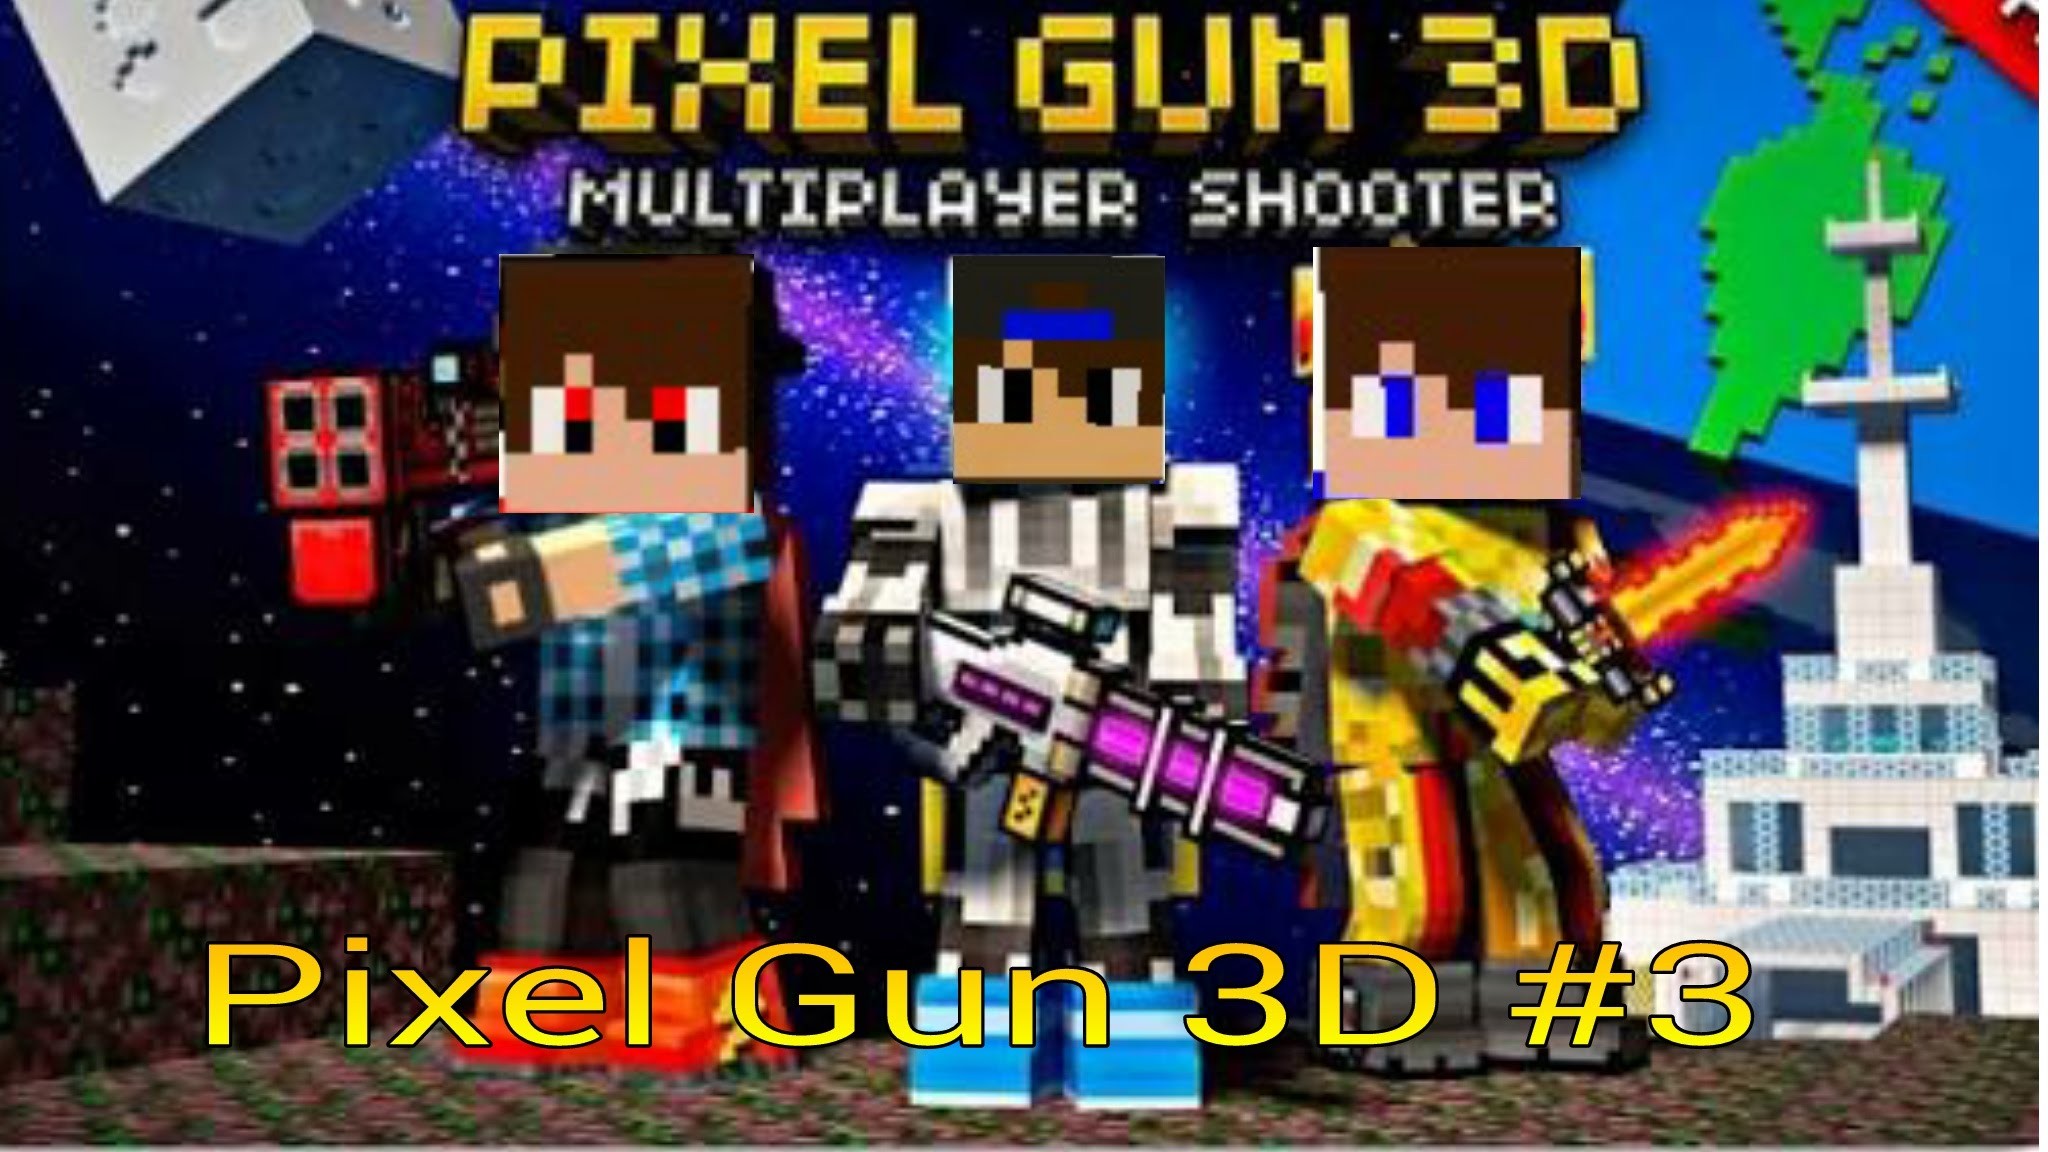 2048x1152 ððPixel Gun 3D #3ðð